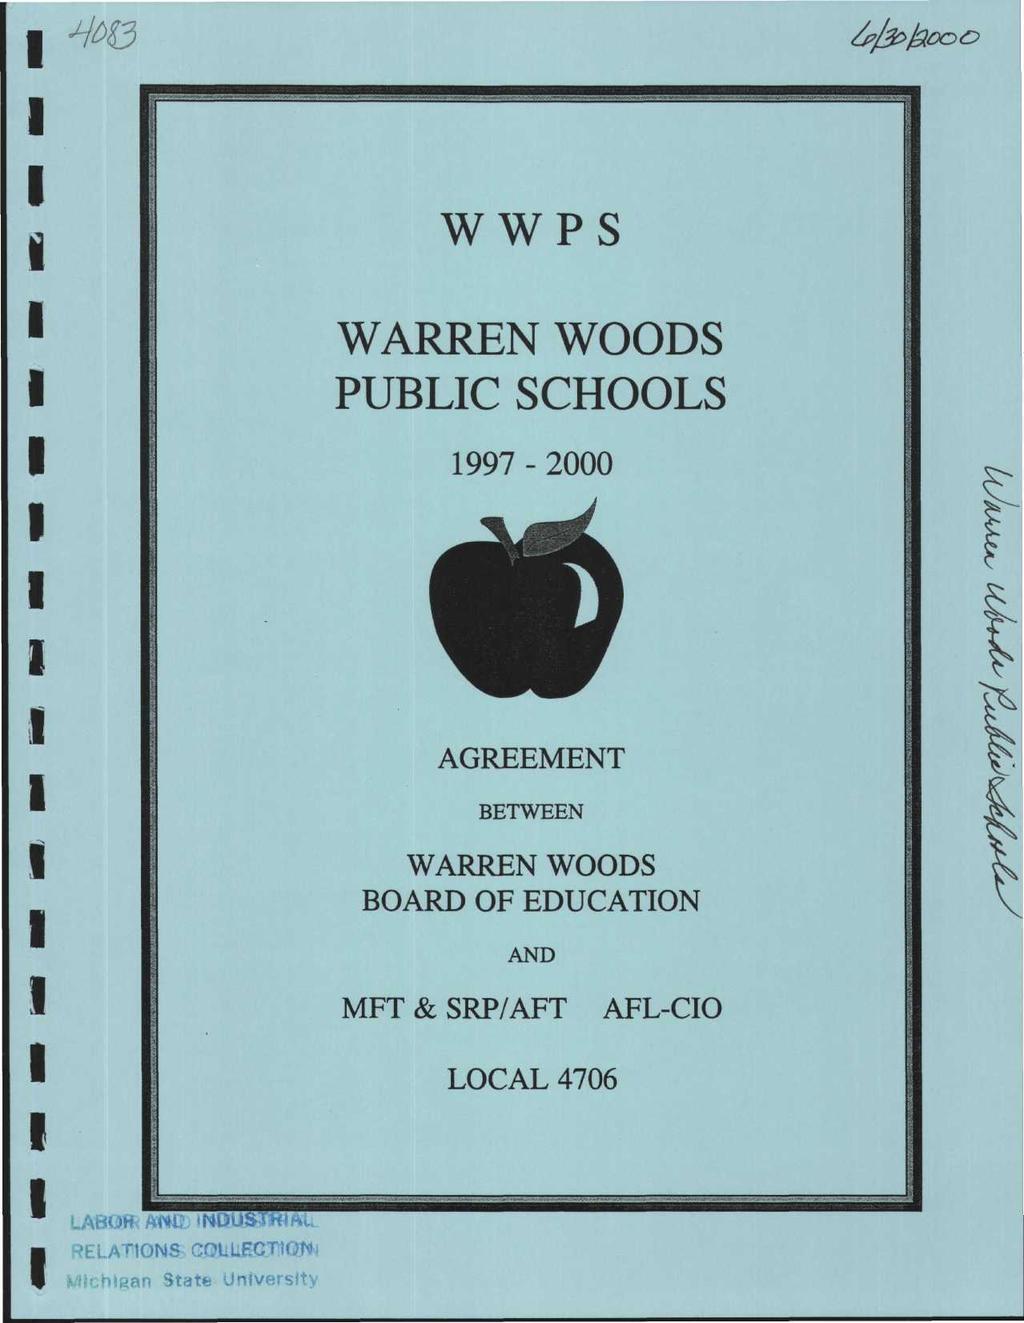 1 1 1 WWPS WARREN WOODS PUBLC SCHOOLS 1997-2000 AGREEMENT BETWEEN WARREN WOODS BOARD